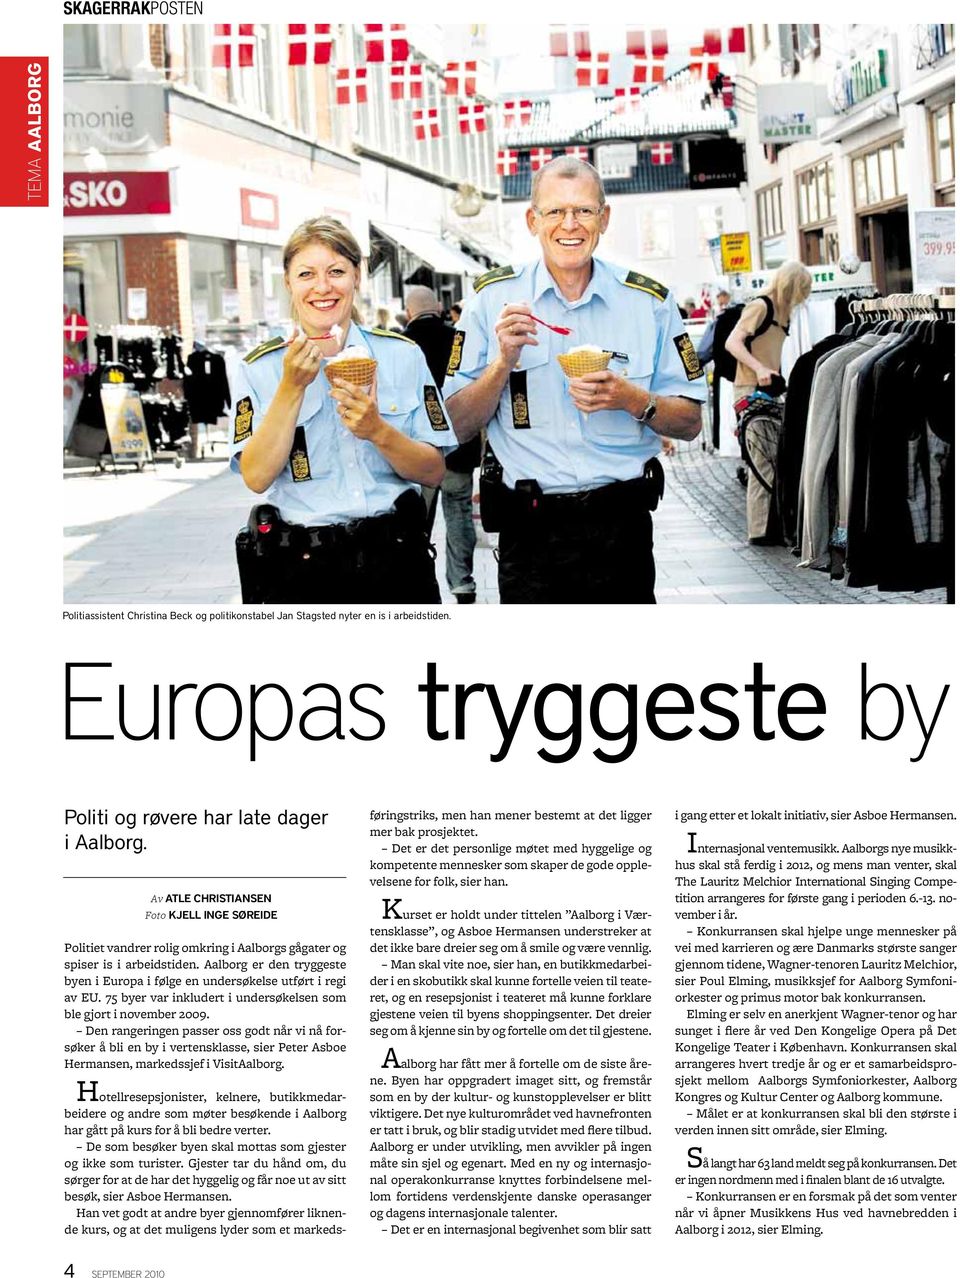 Aalborg er den tryggeste byen i Europa i følge en undersøkelse utført i regi av EU. 75 byer var inkludert i undersøkelsen som ble gjort i november 2009.